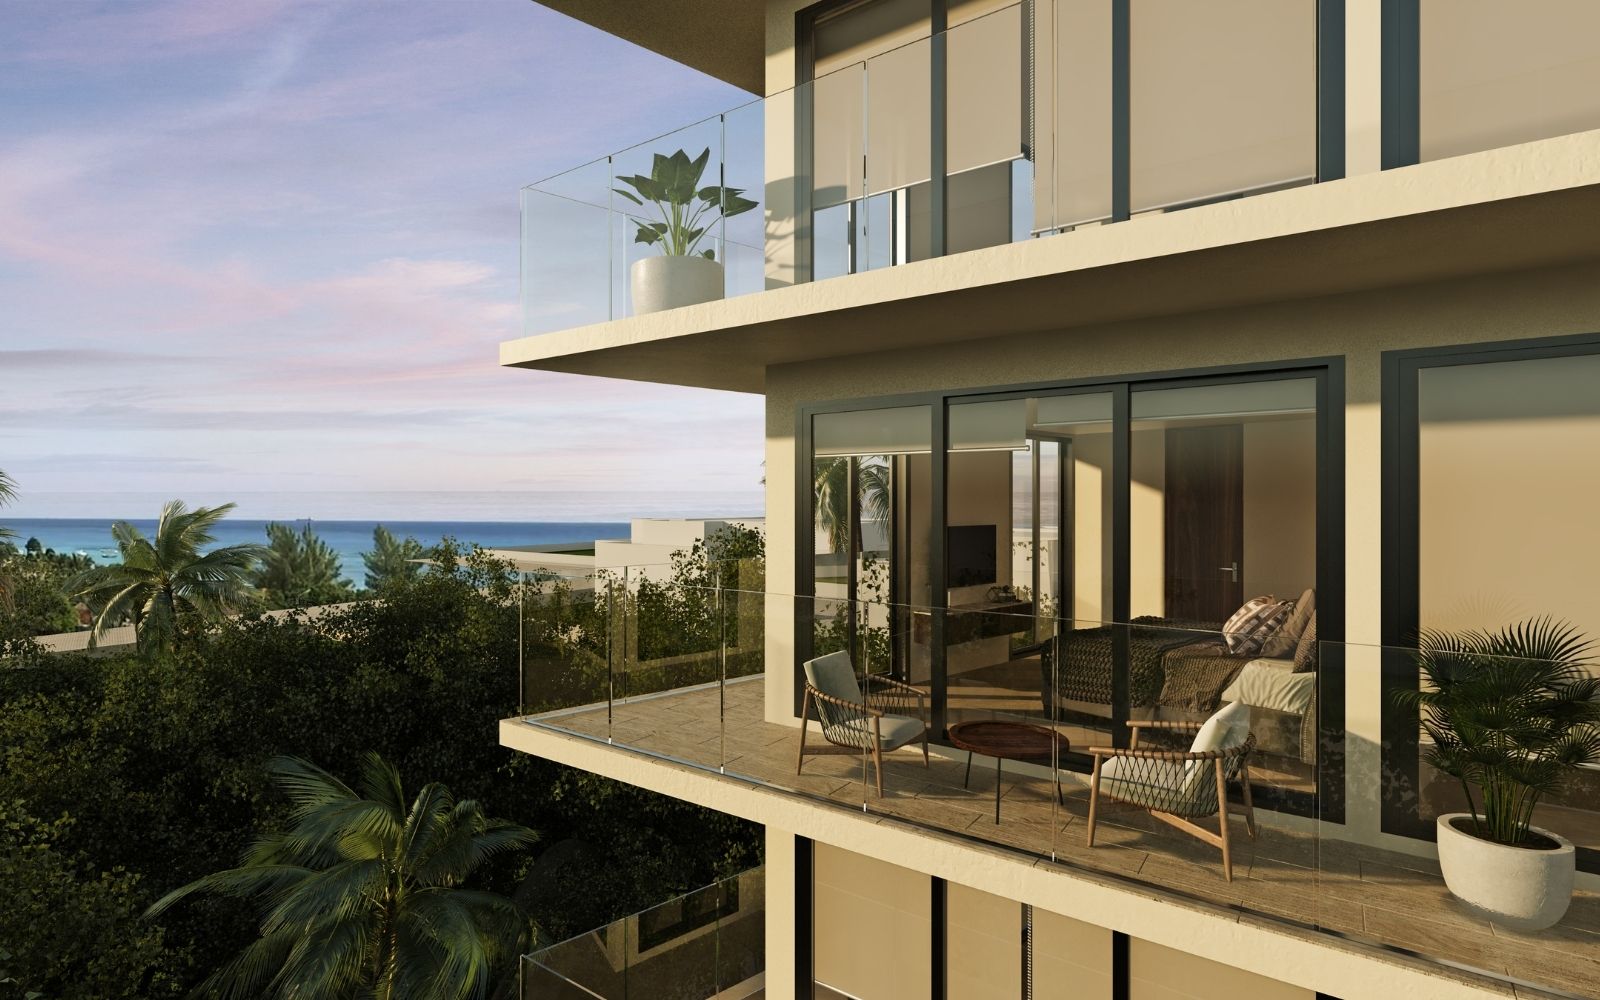 Condominio frente al mar, terraza vista al mar con jacuzzi privado,spa, club de playa, gym, en campo de golf,